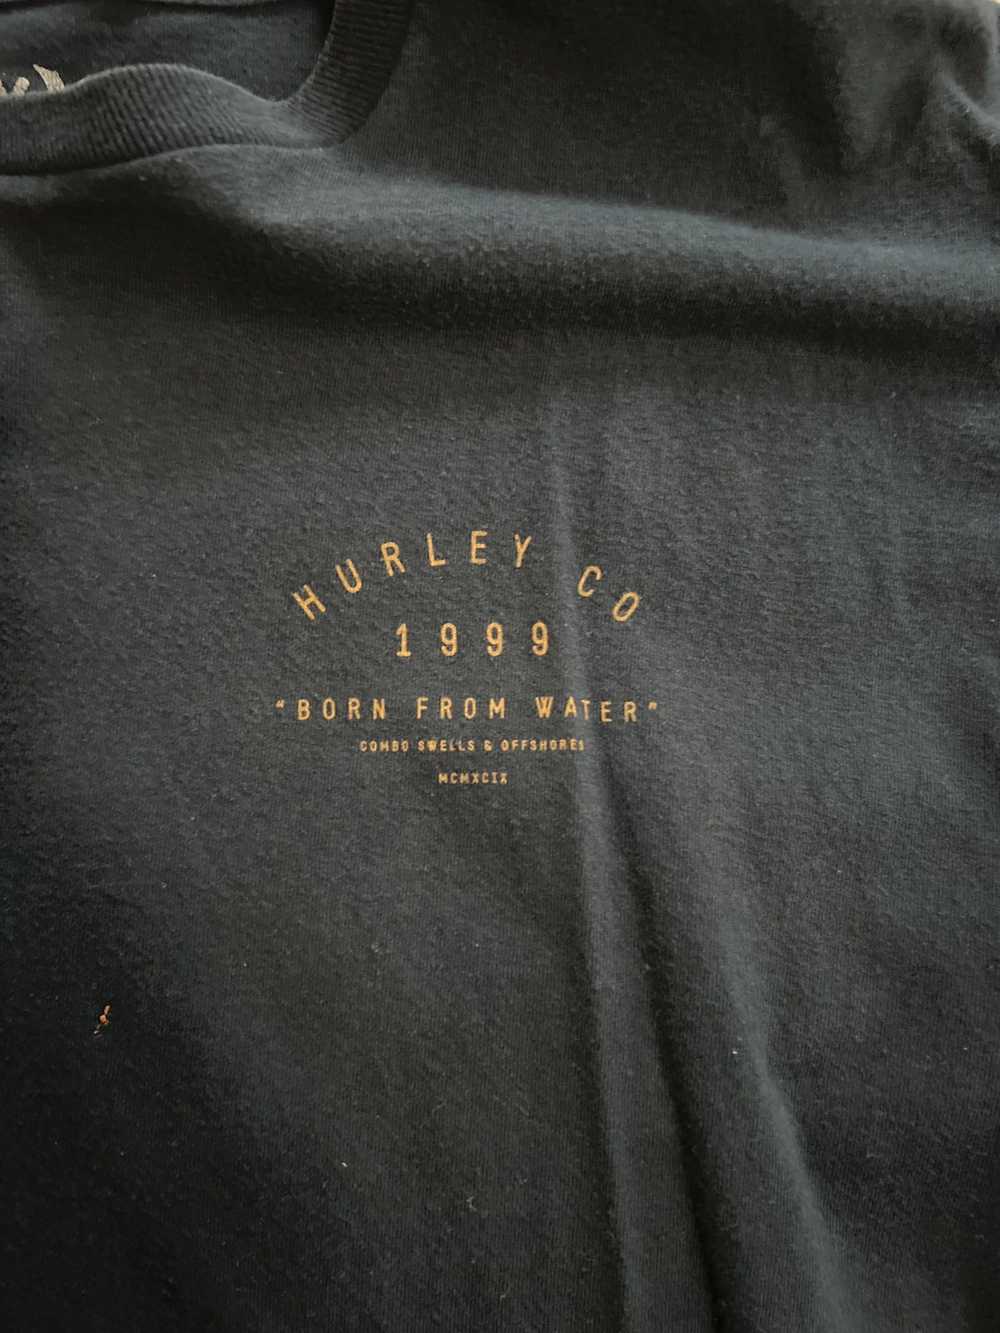 Hurley Hurley co T-shirt - image 3